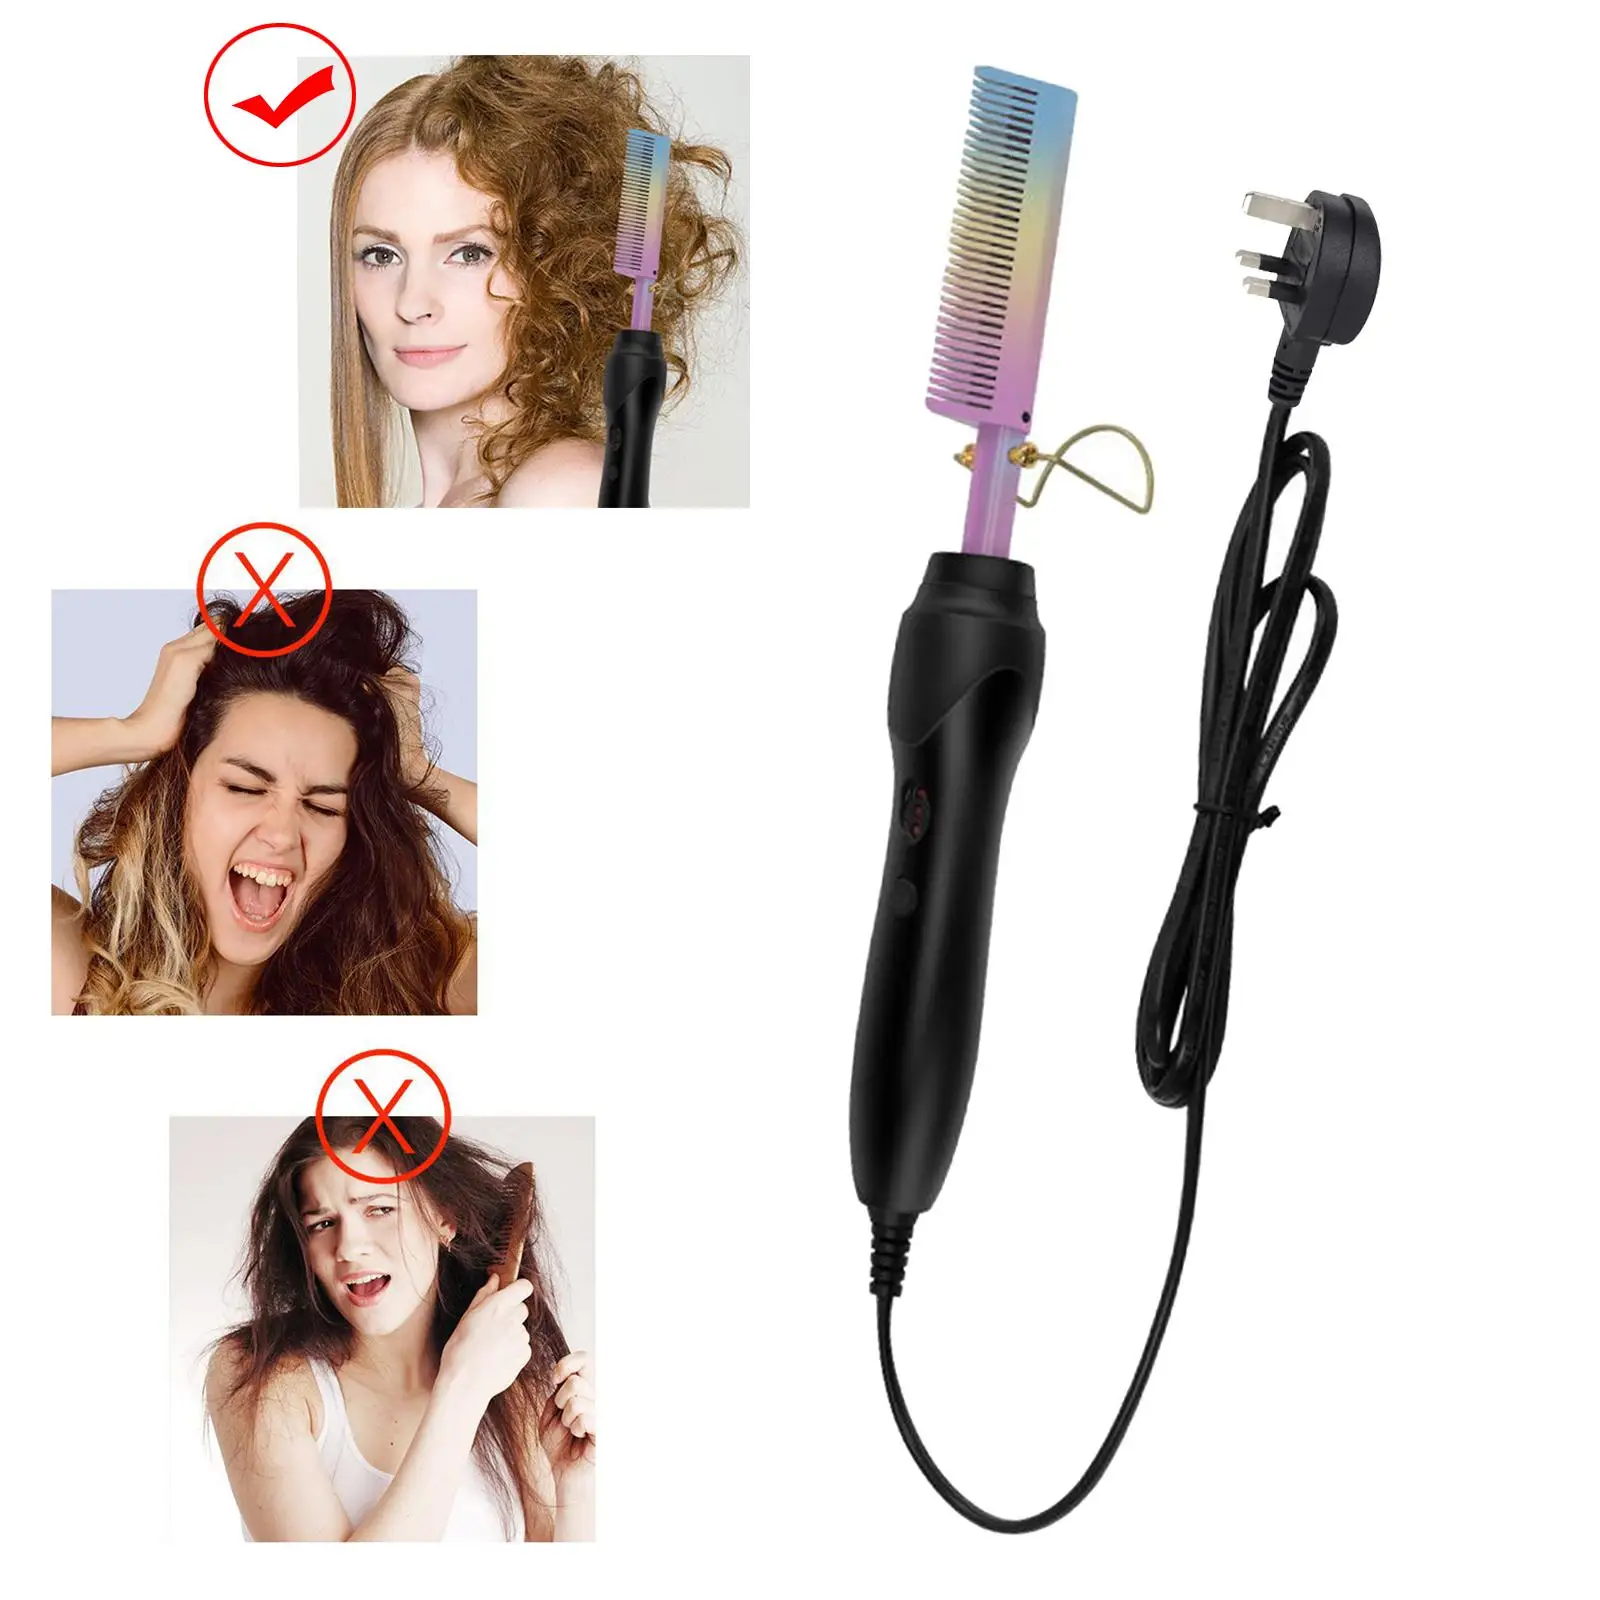 Hair Straightener Comb Brush Straightening Professional Hot Air Brushes UK Plug